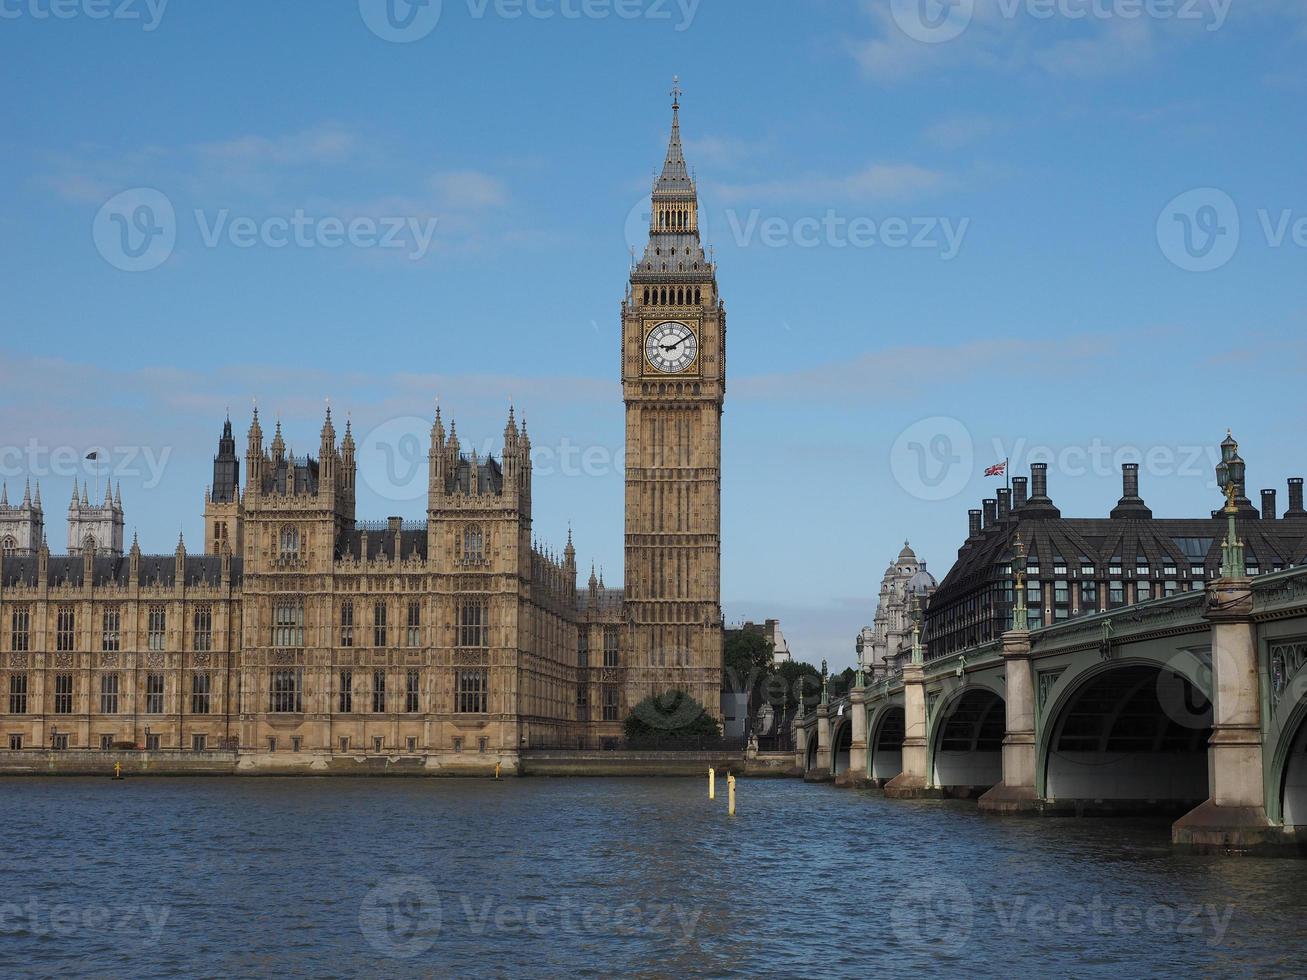 Parlamentsgebäude in London foto